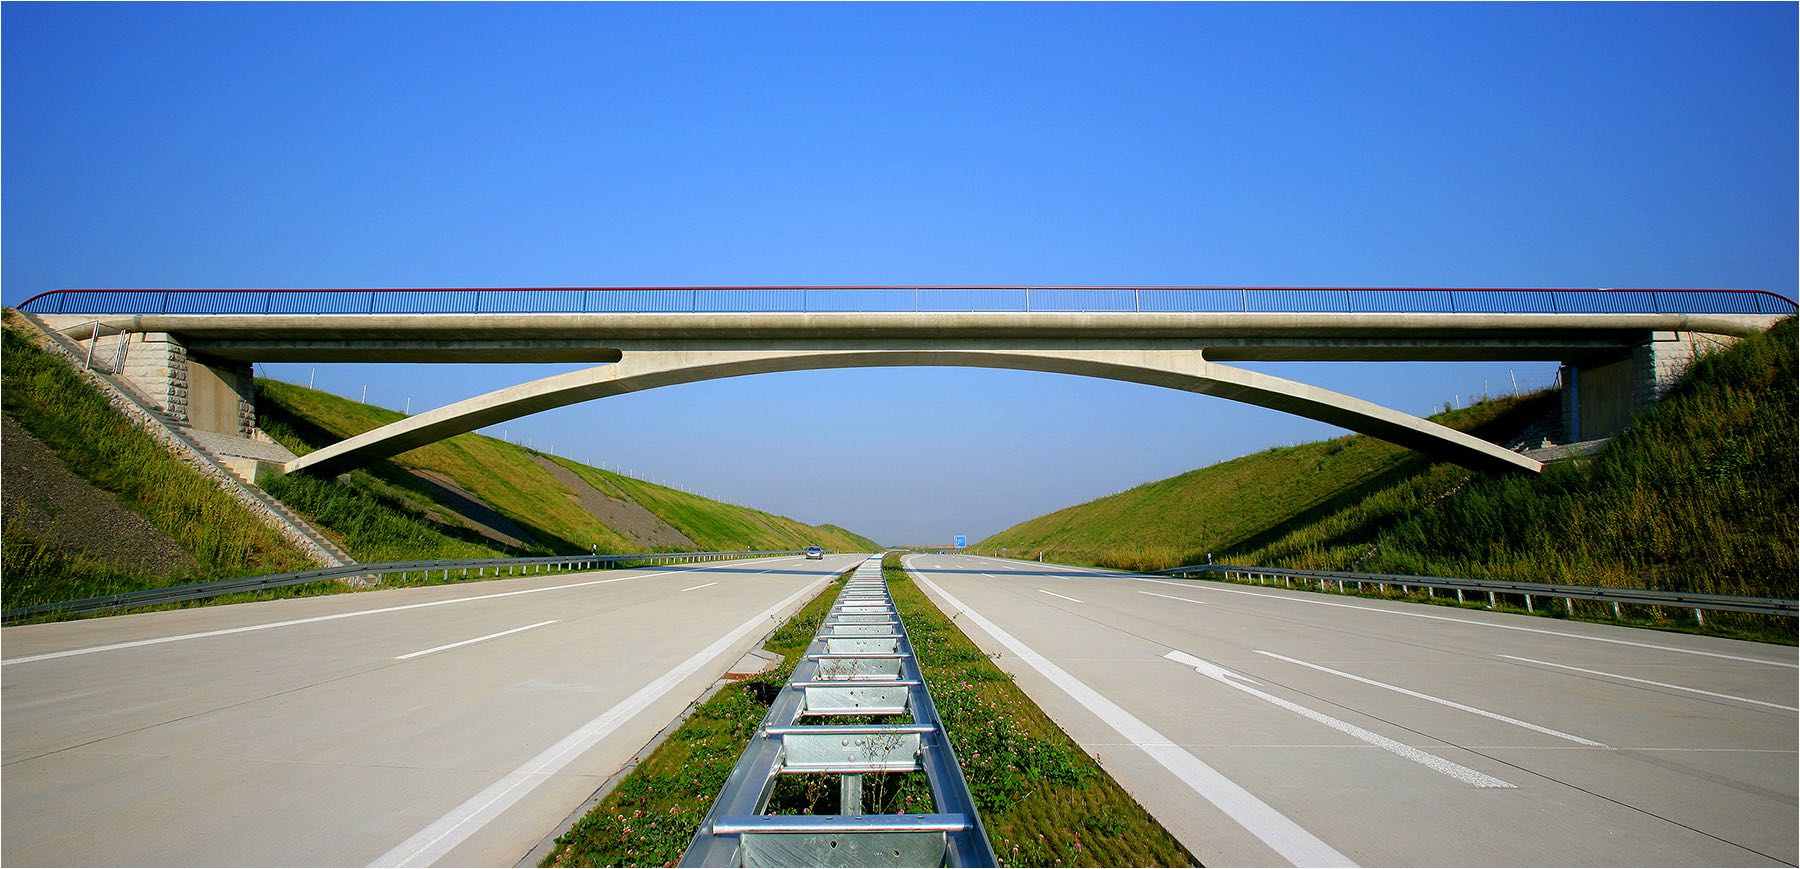  Architekturfotografie. Neu errichtete Autobahnbrücke an der A72 bei Penig, fotografiert mit Kleinbild Digital 21 Mio Pixel Auflösung. Copyright by Fotostudio Jörg Riethausen 